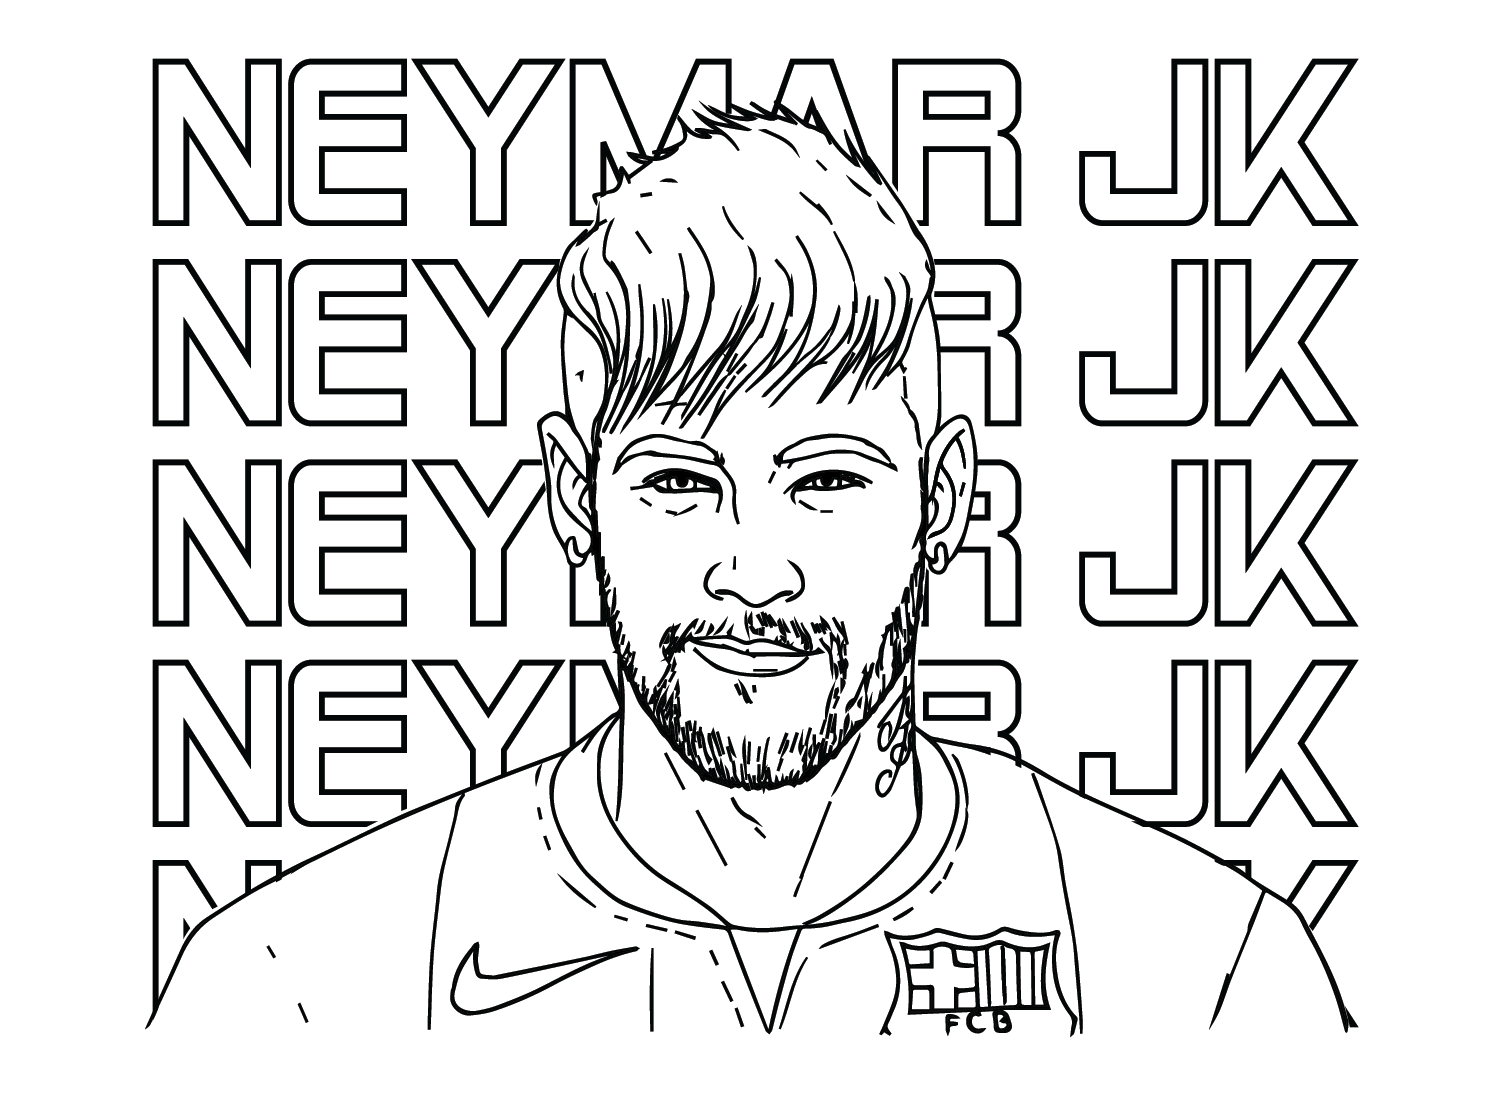 Neymar JK de Neymar